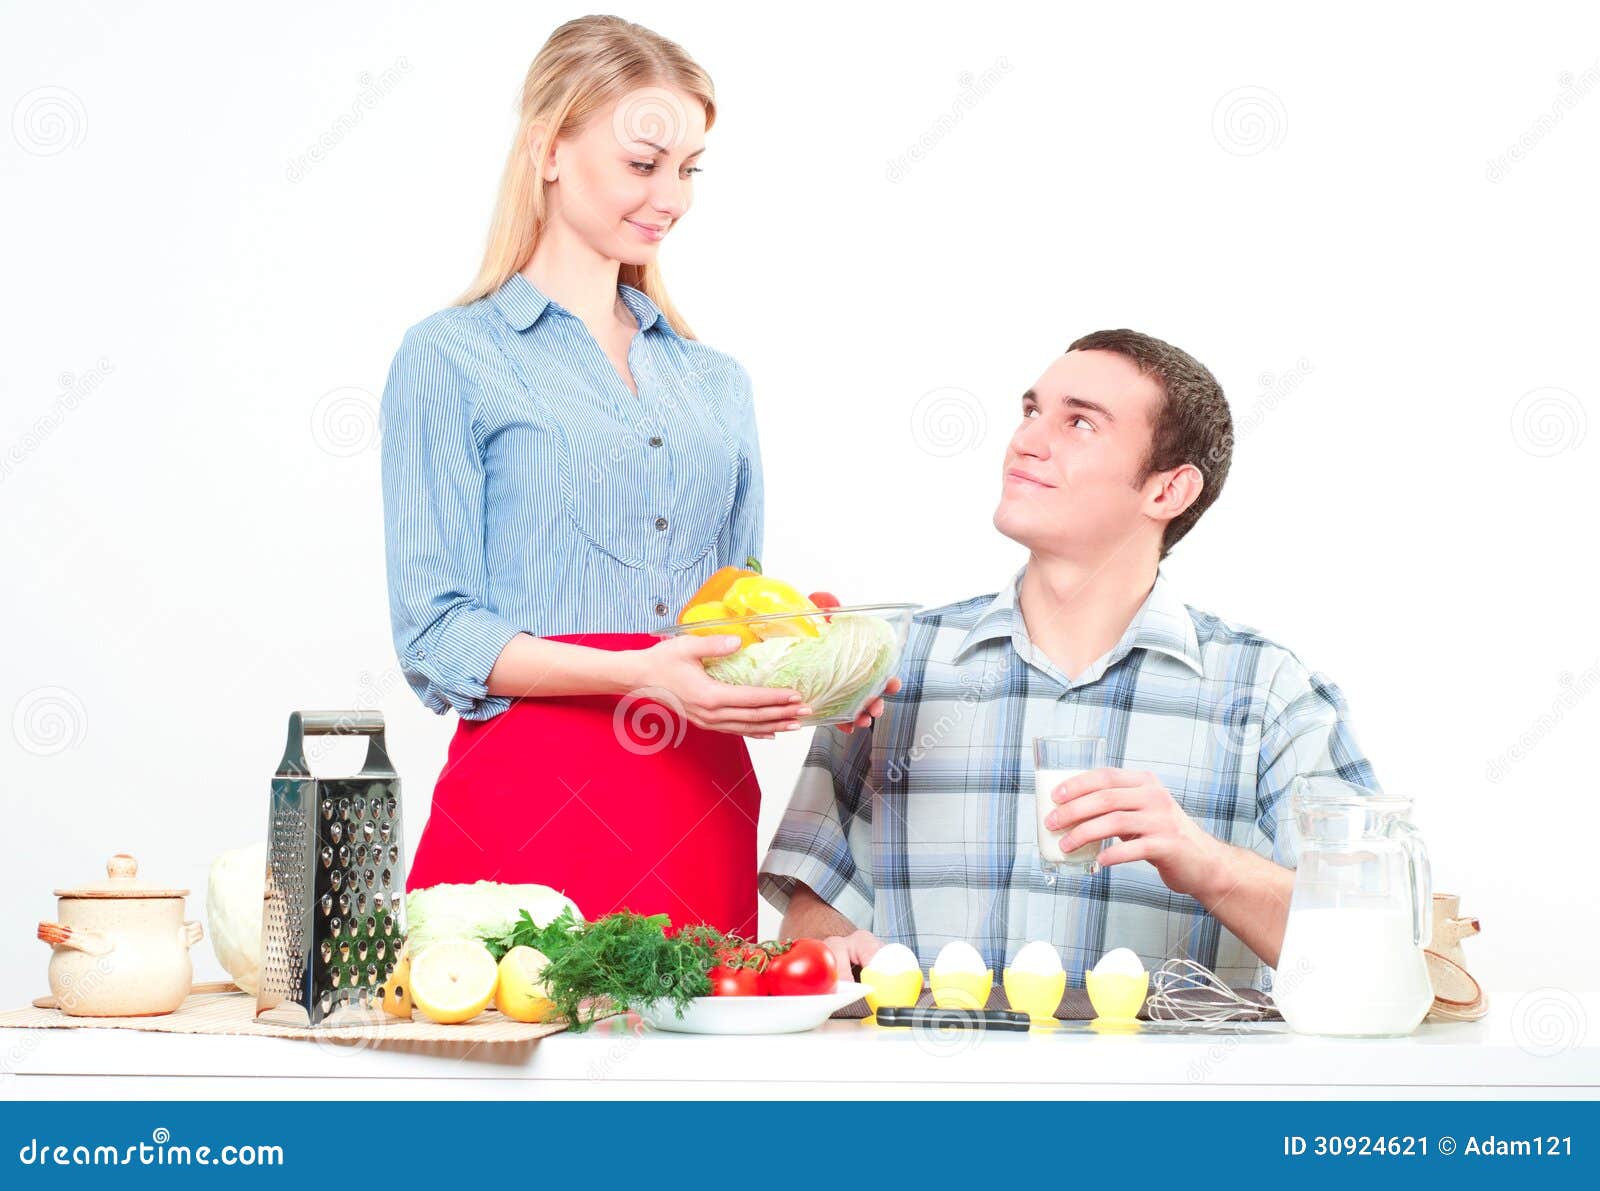 Кормить бывшего мужа. Женщина накладывает еду. Уставшая женщина на кухне. Бизнесмен и домохозяйка. Жена подает мужу еду.